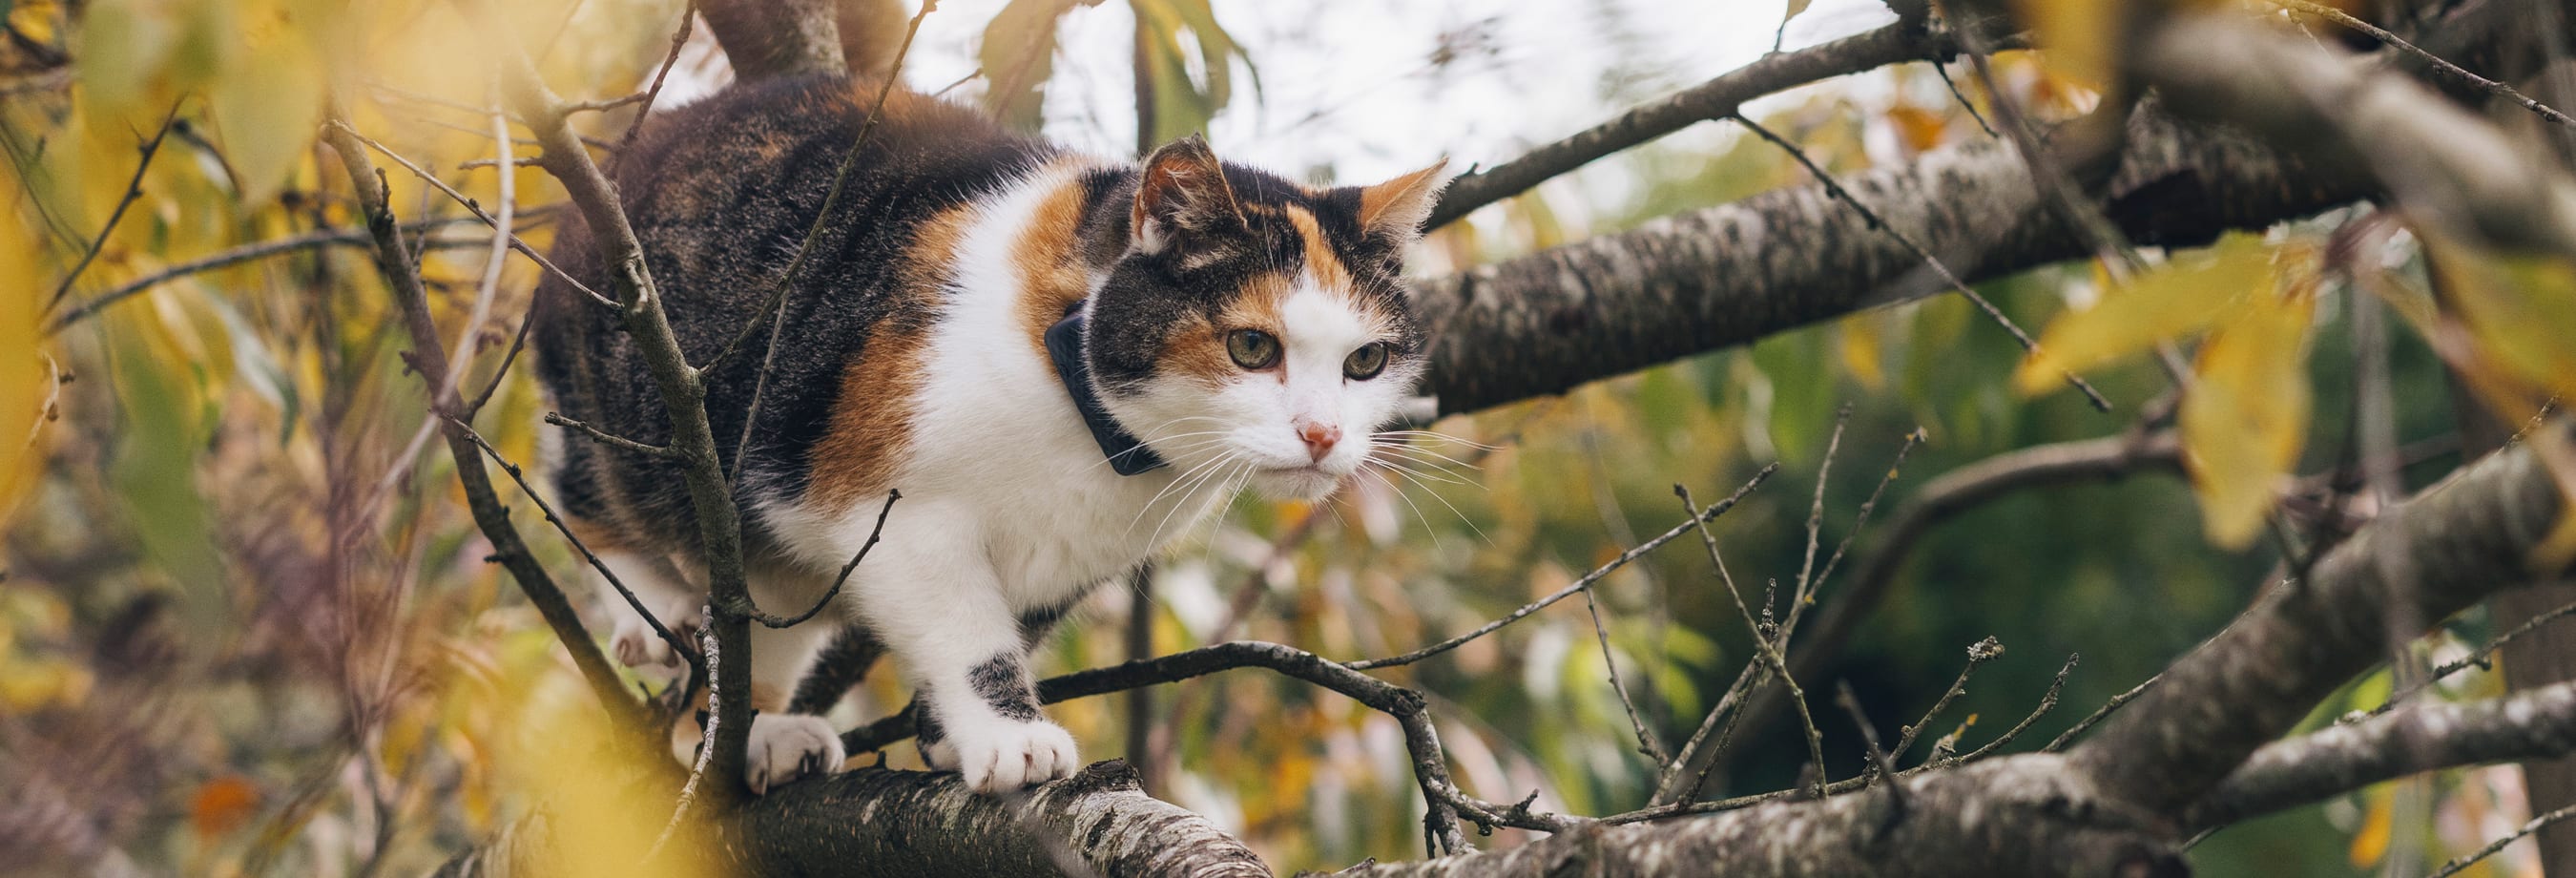 Un gatto cammina su un albero